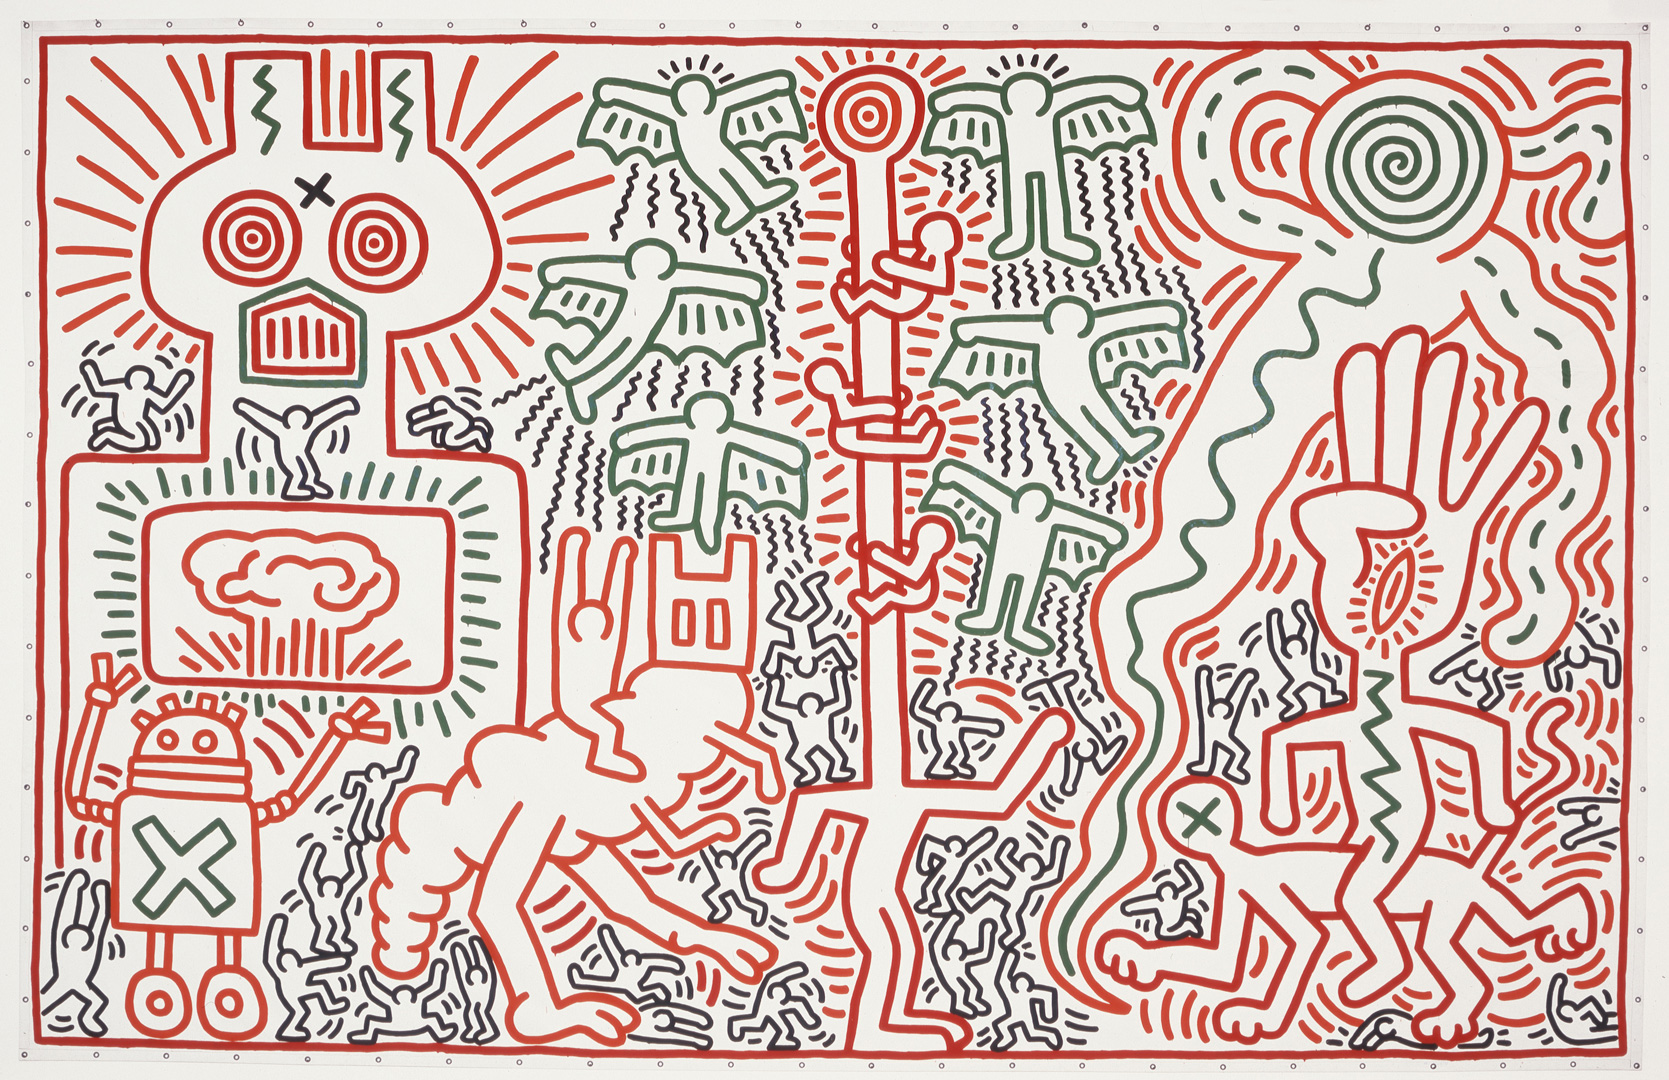 Keith Haring - Untitled, 1983, vinyl paint on vinyl tarpaulin